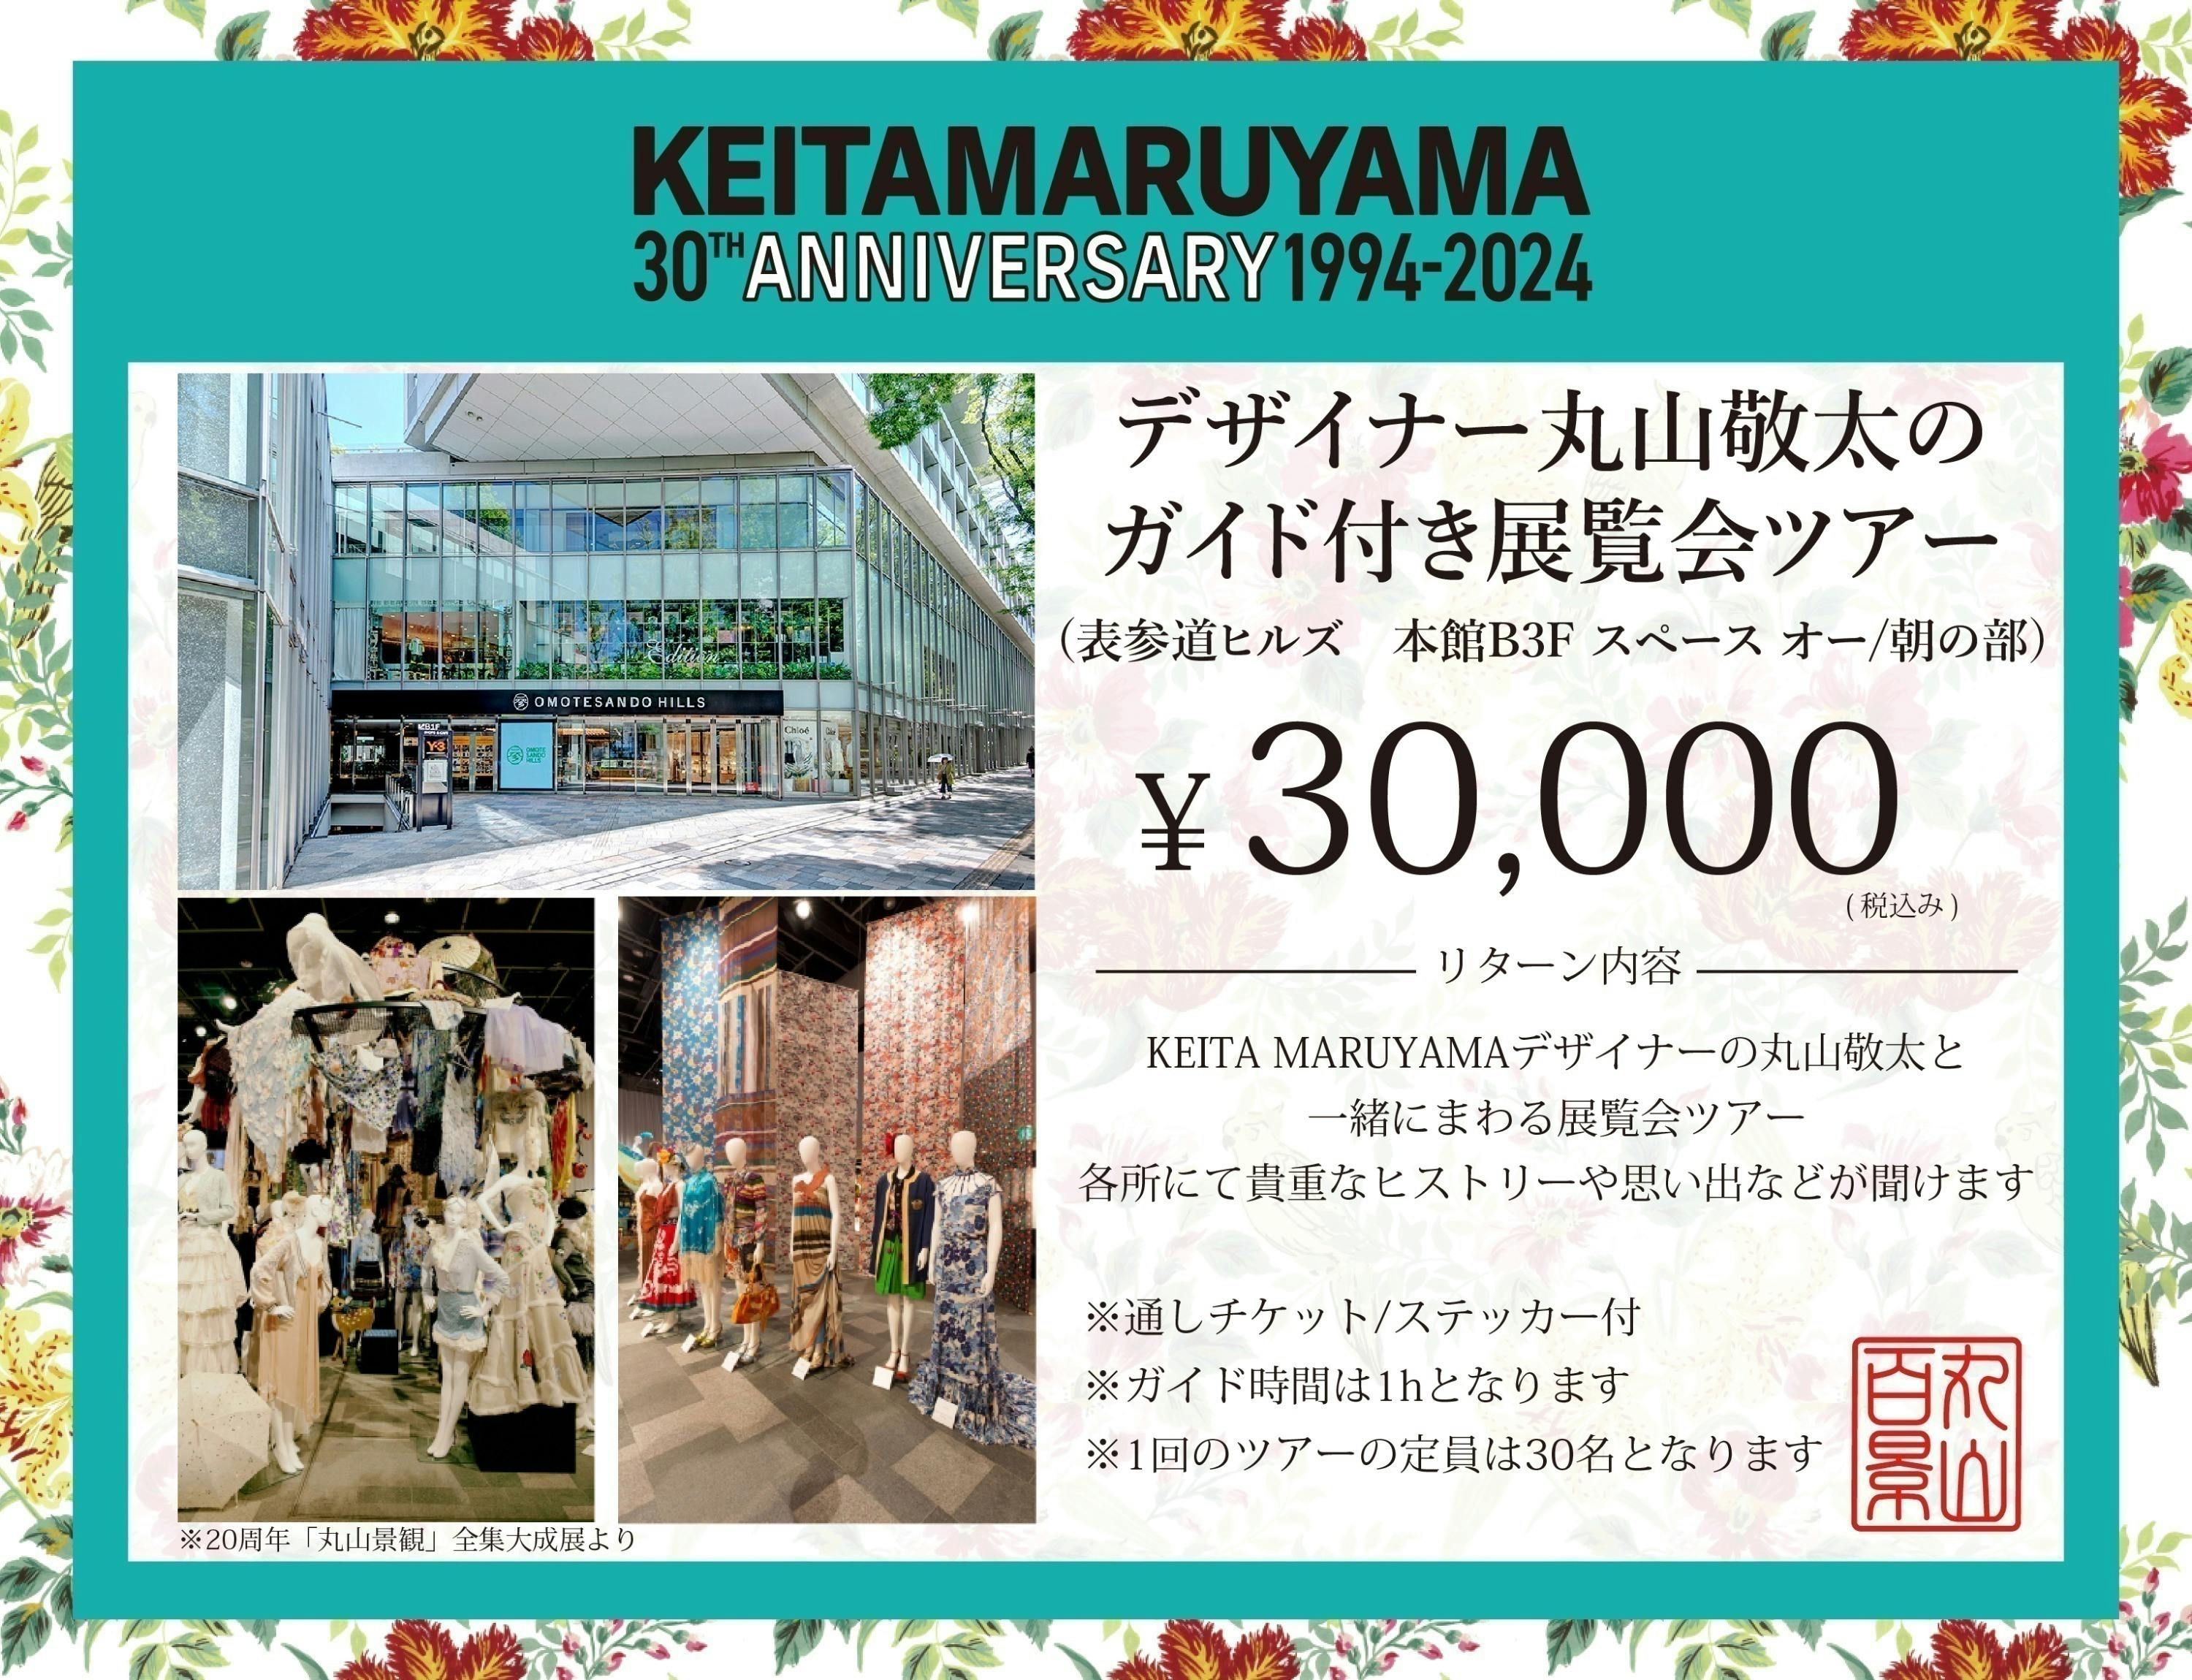 ケイタマルヤマ30周年『丸山百景』プロジェクト ーケイタマルヤマ遊覧 